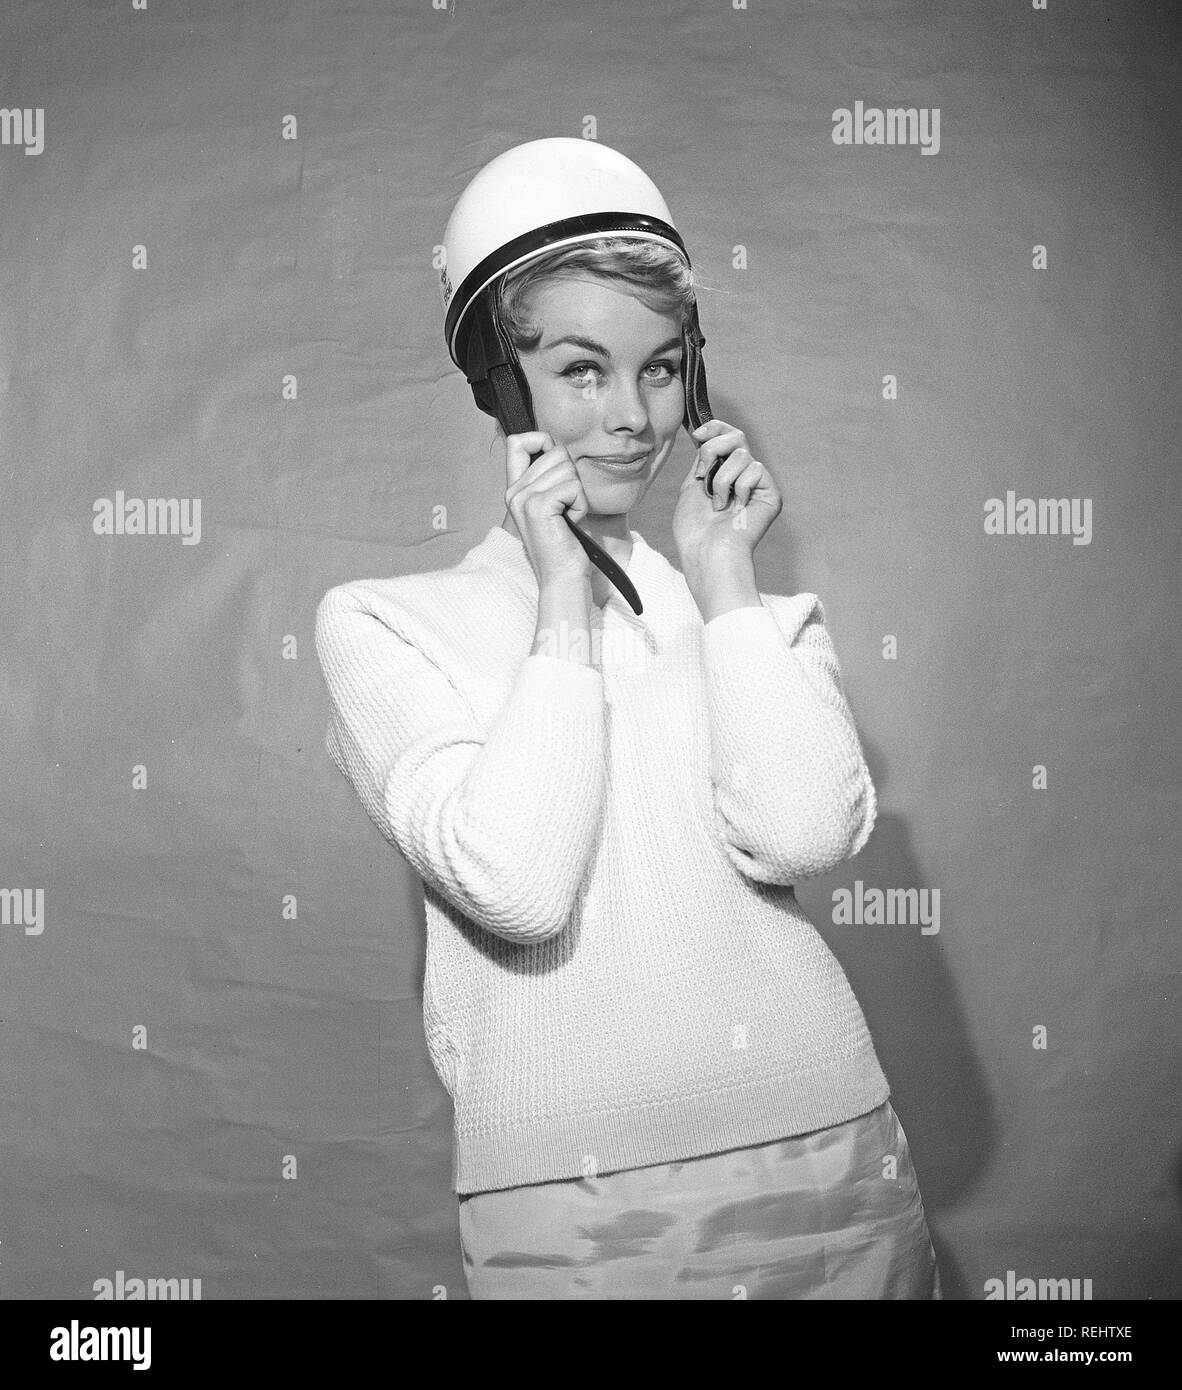 Femme dans les années 1950. Une jeune femme se tient debout vêtue d'un chandail typique 50s. Elle est mise sur un cyclomoteur blanc casque. Kristoffersson Photo ref BZ8-6. Suède 1952 Banque D'Images